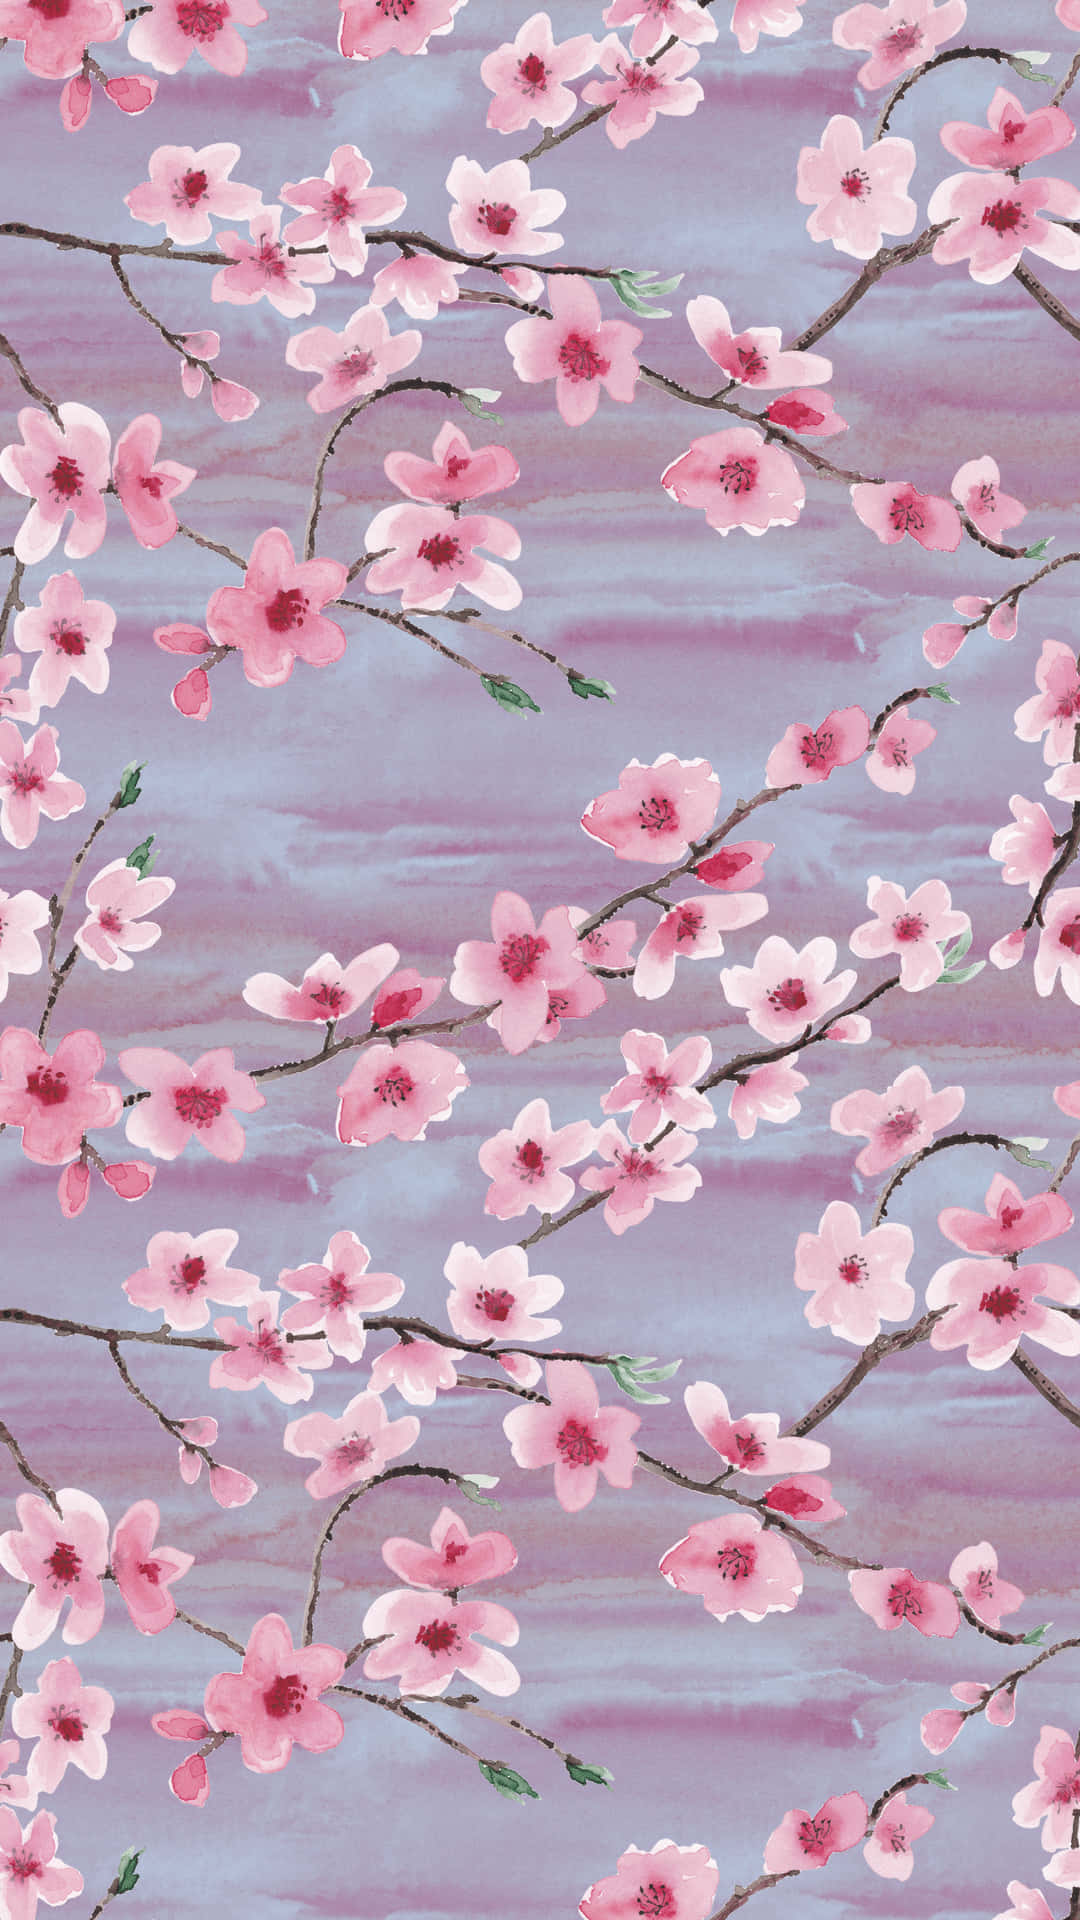 En følsom lyserød kirsebærblomst fyldt med romantik. Wallpaper